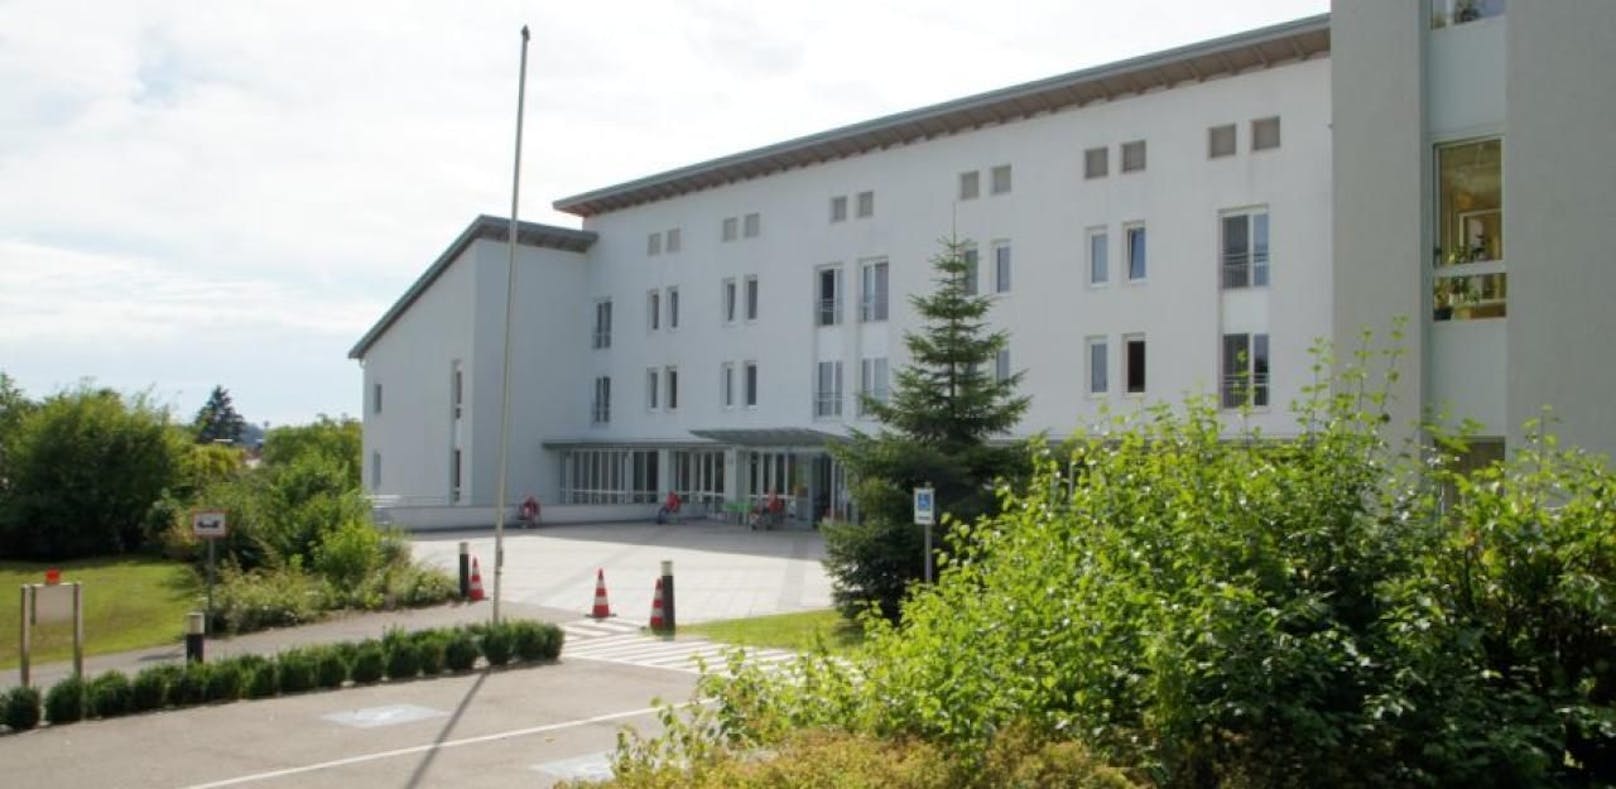 Bewohner im Zentrum für Betreuung und Pflege in Neuhofen sind an CoVid19 erkrankt.